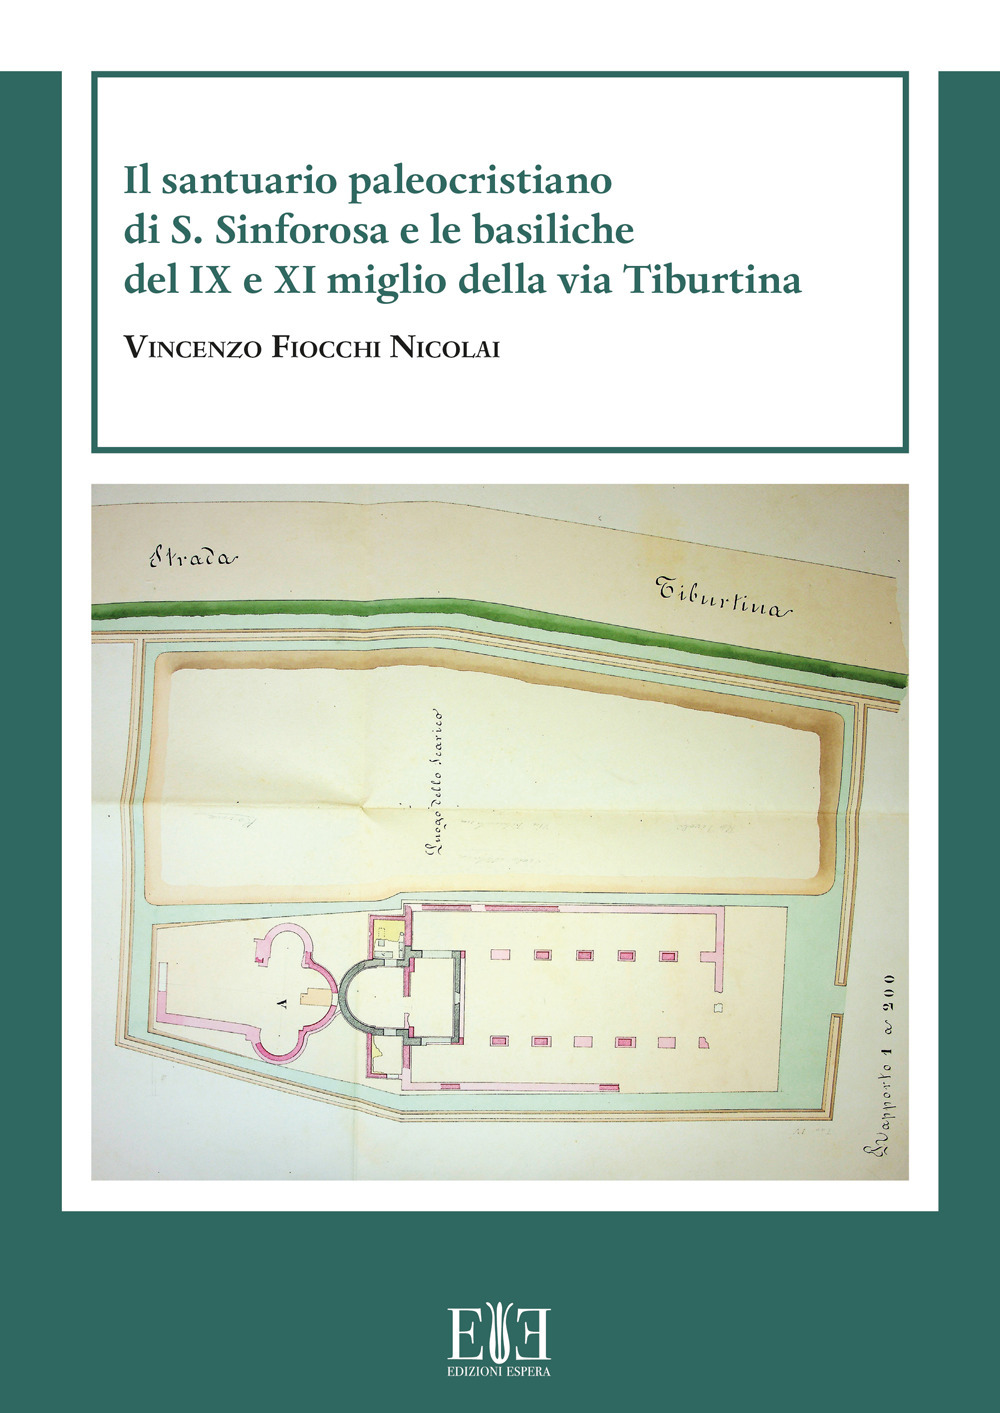 Il santuario paleocristiano di S. Sinforosa e le basiliche del IX e XI miglio della via Tiburtina